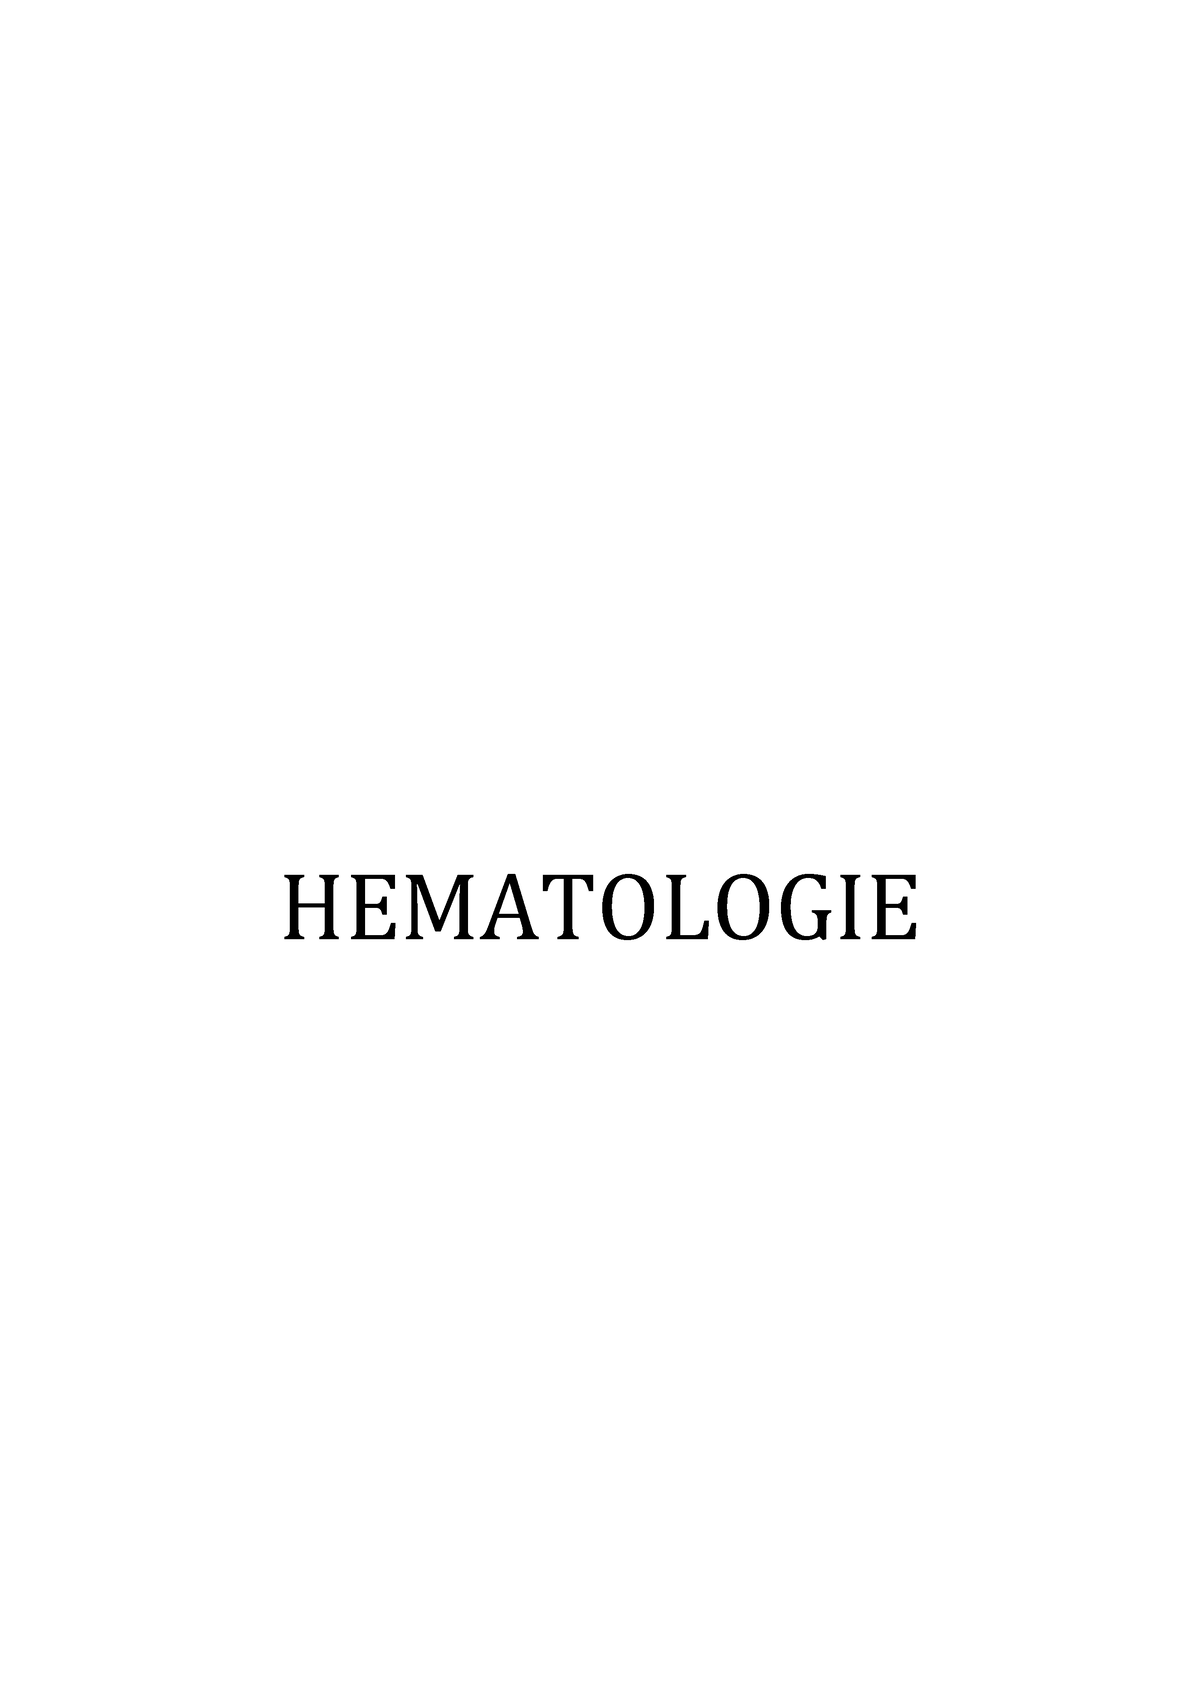 252703893- Hematologie - HEMATOLOGIE  Definitie  Functiile sangelui Proprietatile sangelui - Studocu